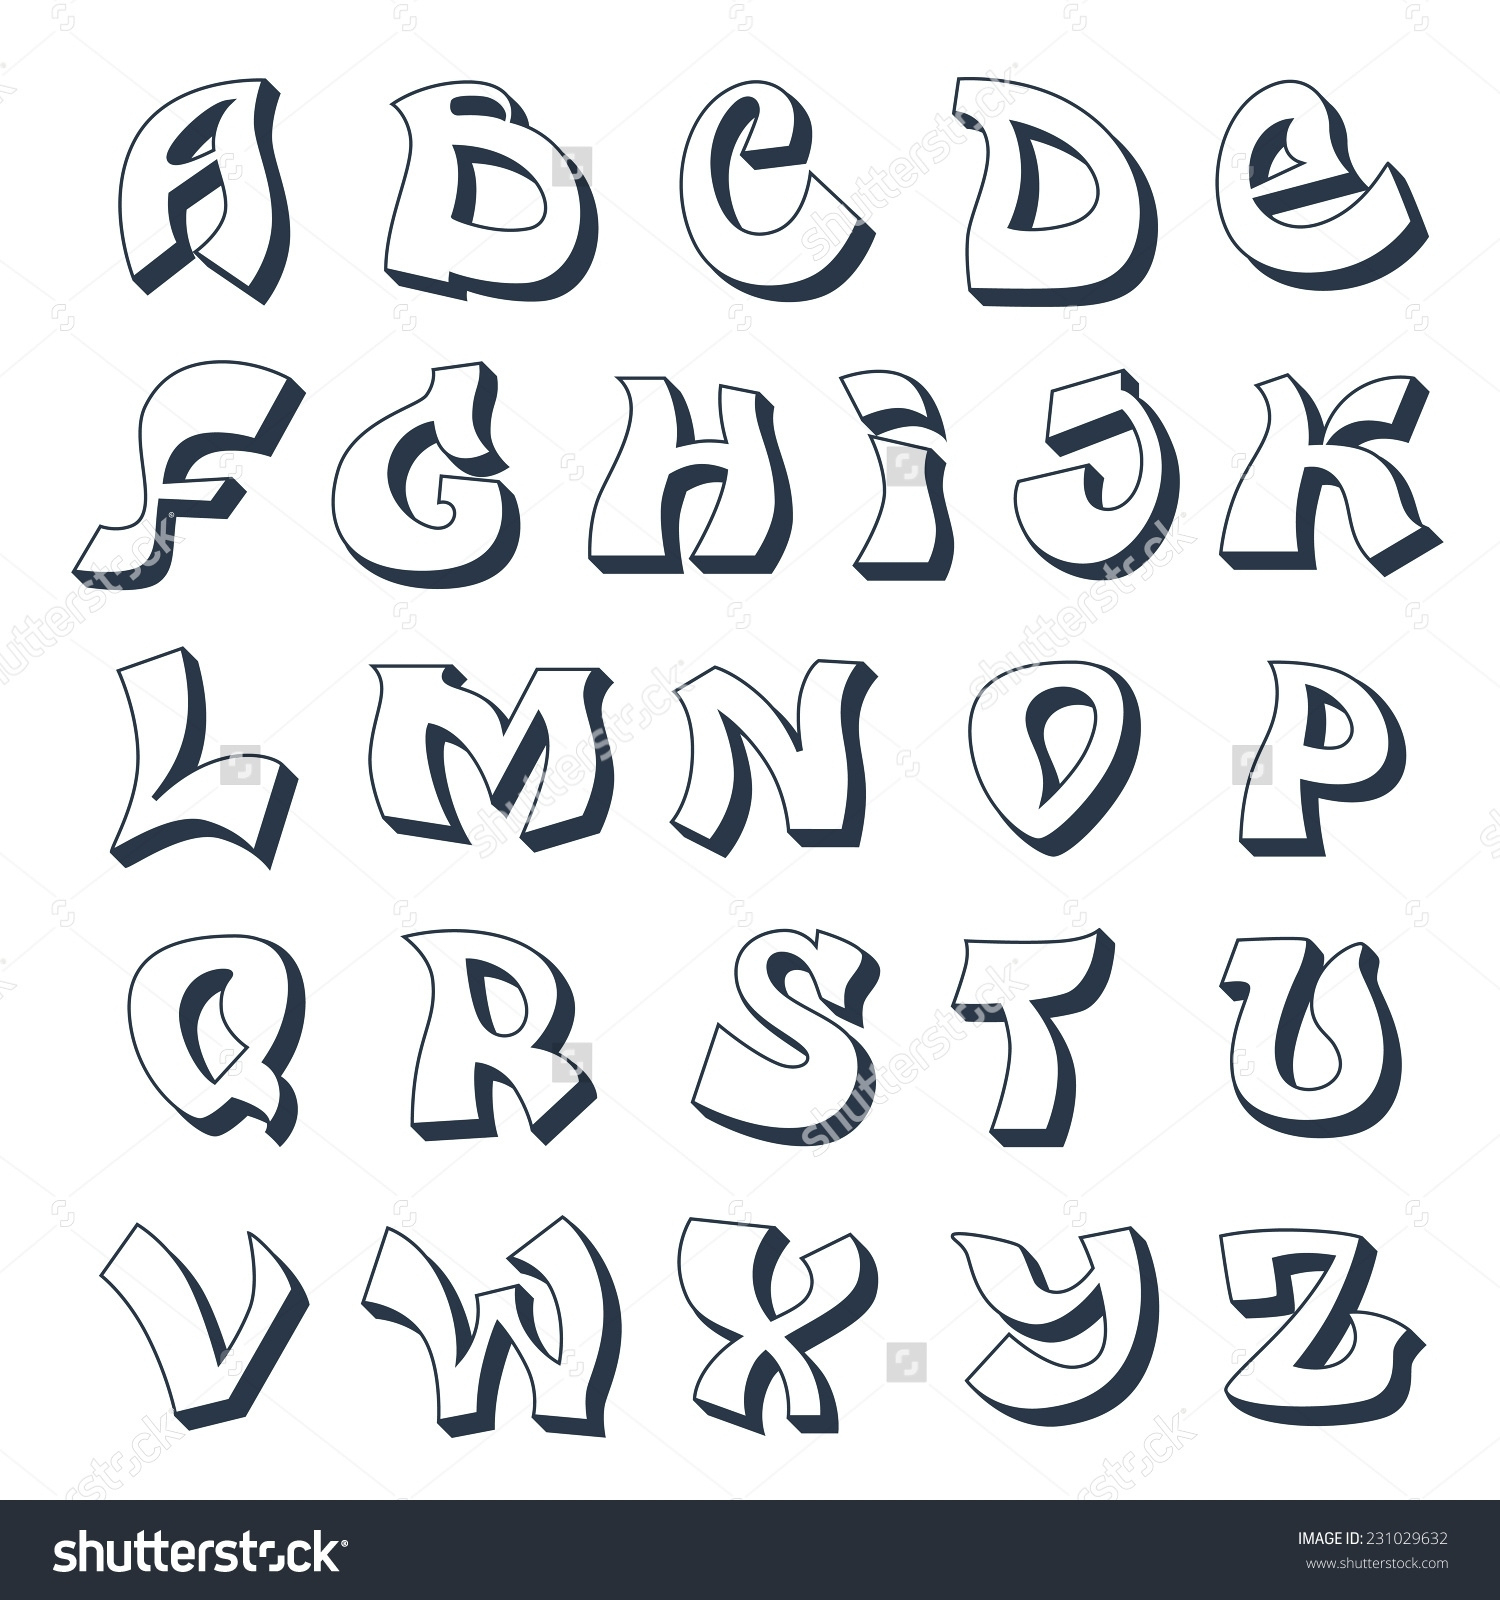 Alphabet Buchstaben Ausdrucke - Malvorlagen Für Kinder innen Buchstaben Zum Ausdrucken Und Ausschneiden